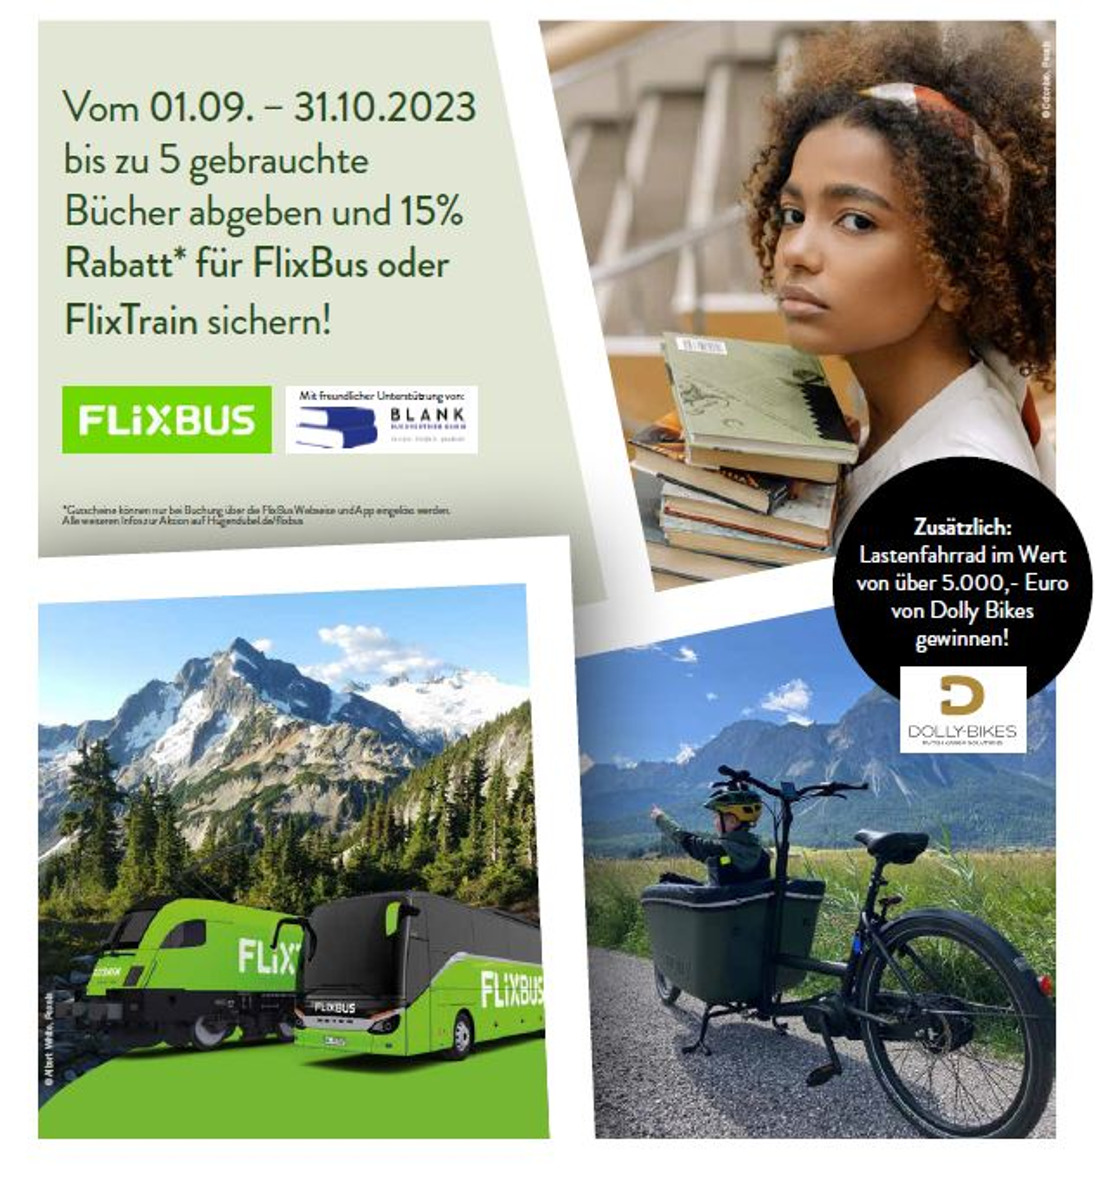 Hugendubel, FlixBus und buchspende.org verzeichnen positive Resonanz für Buchspende-Aktion